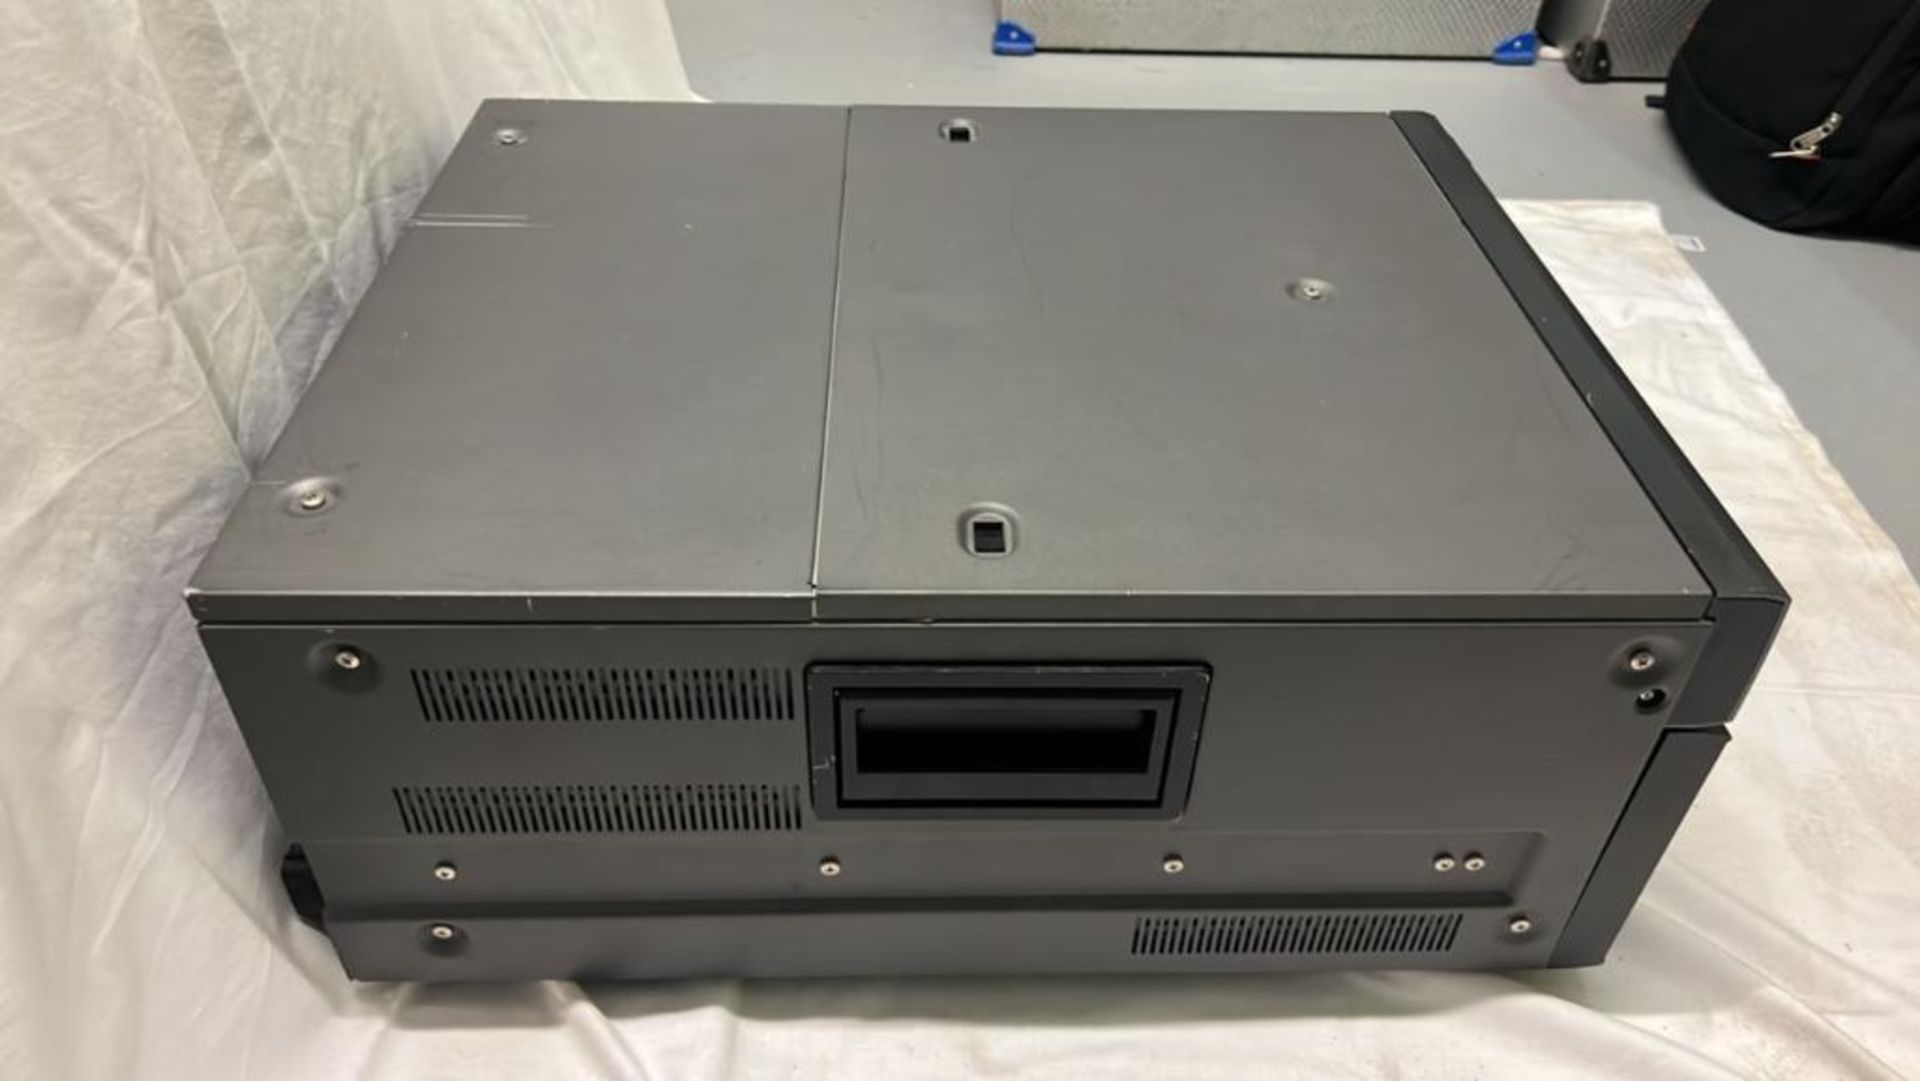 Sony SRW-5800/2 HDCAM Studio Recorder with flight case SN: 12335 - Image 7 of 8